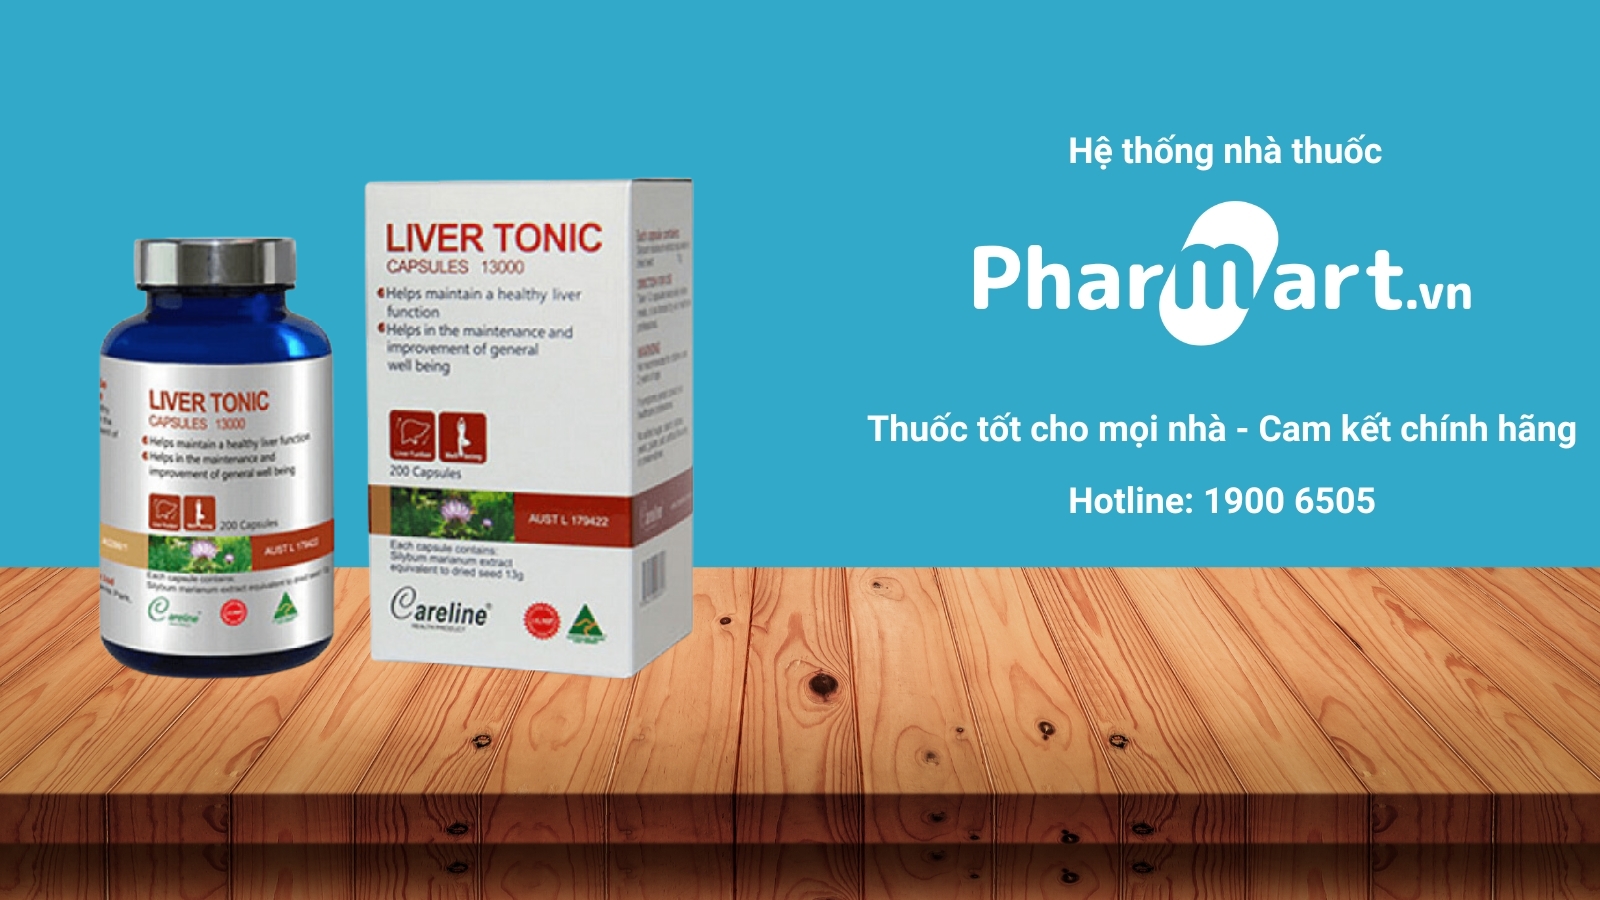 Mua ngay Liver Tonic chính hãng tại Pharmart.vn